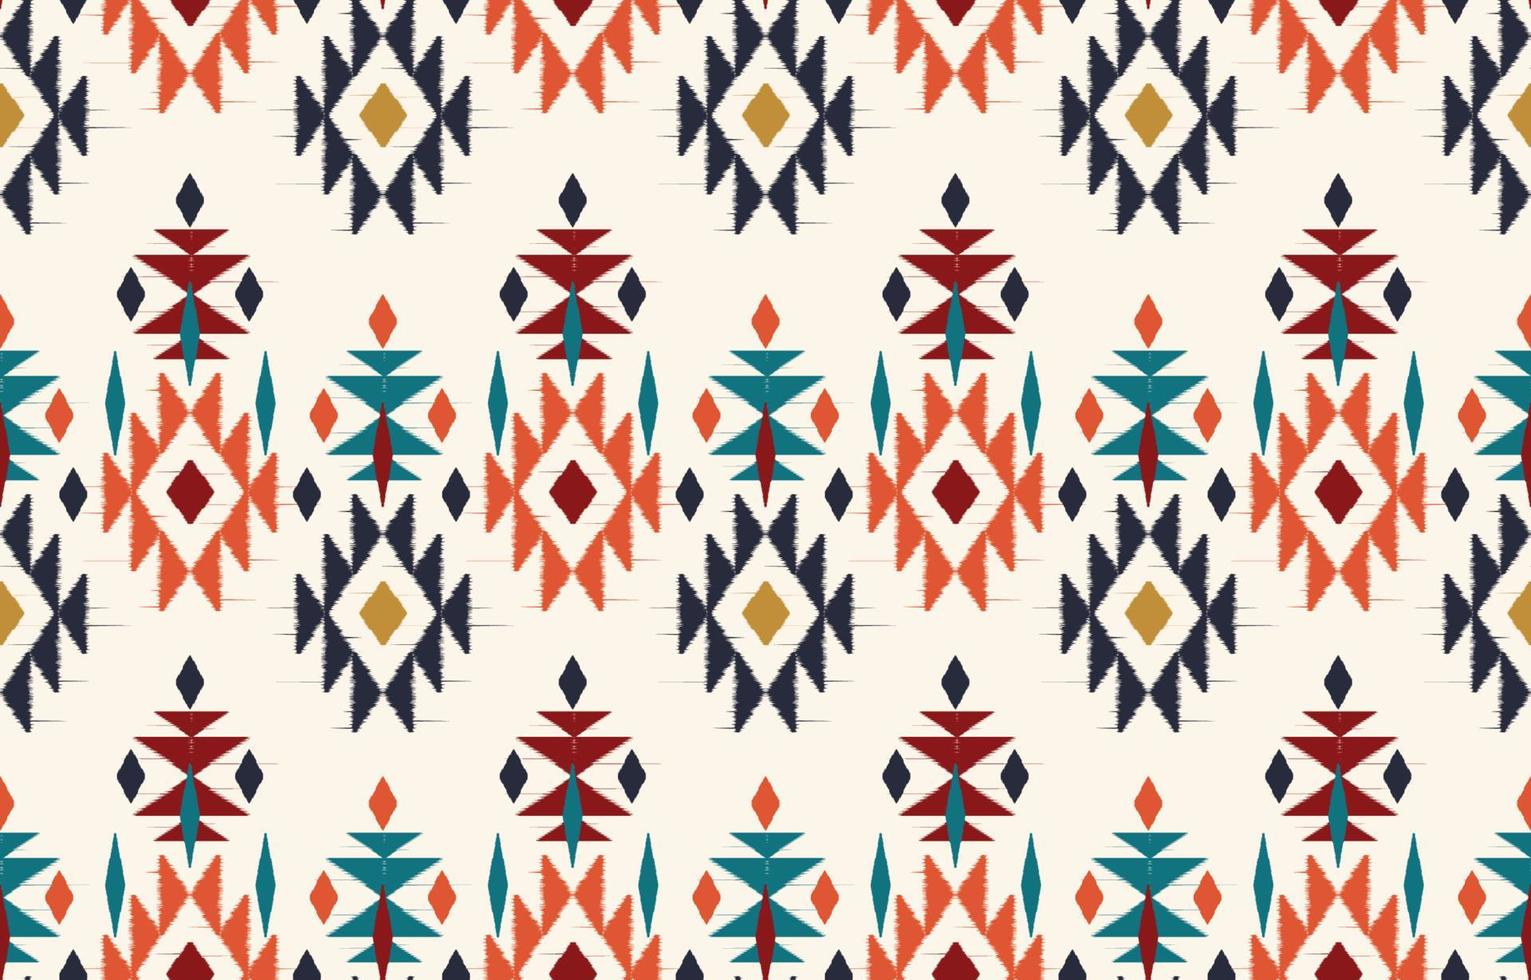 etnische abstracte ikat kunst. naadloos patroon in tribal, volksborduurwerk en Mexicaanse stijl. Azteekse geometrische kunst ornament print.design voor tapijt, behang, kleding, inwikkeling, stof, hoes, textiel vector